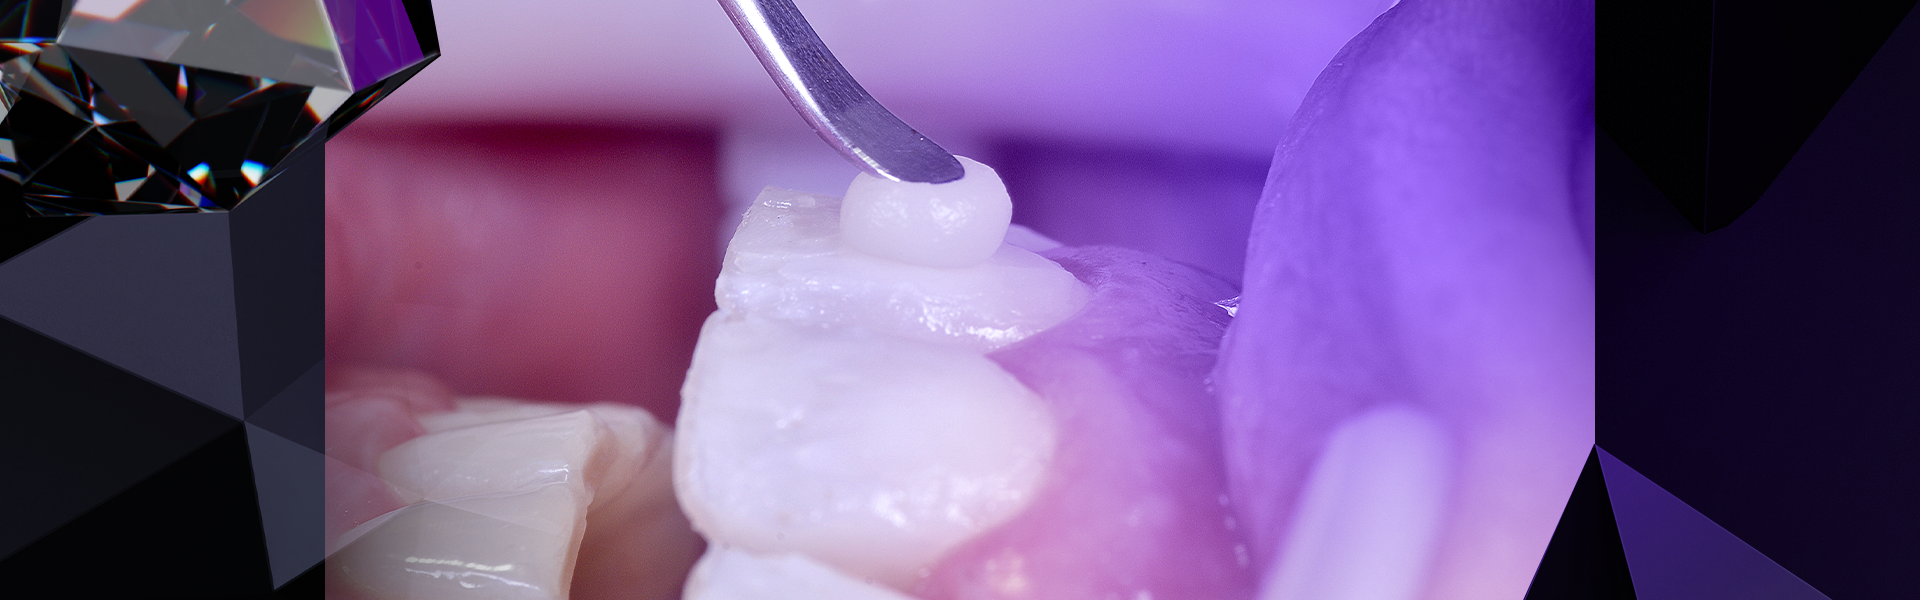 post resinas 1 1 - Como escolher a melhor resina para seu procedimento dental?